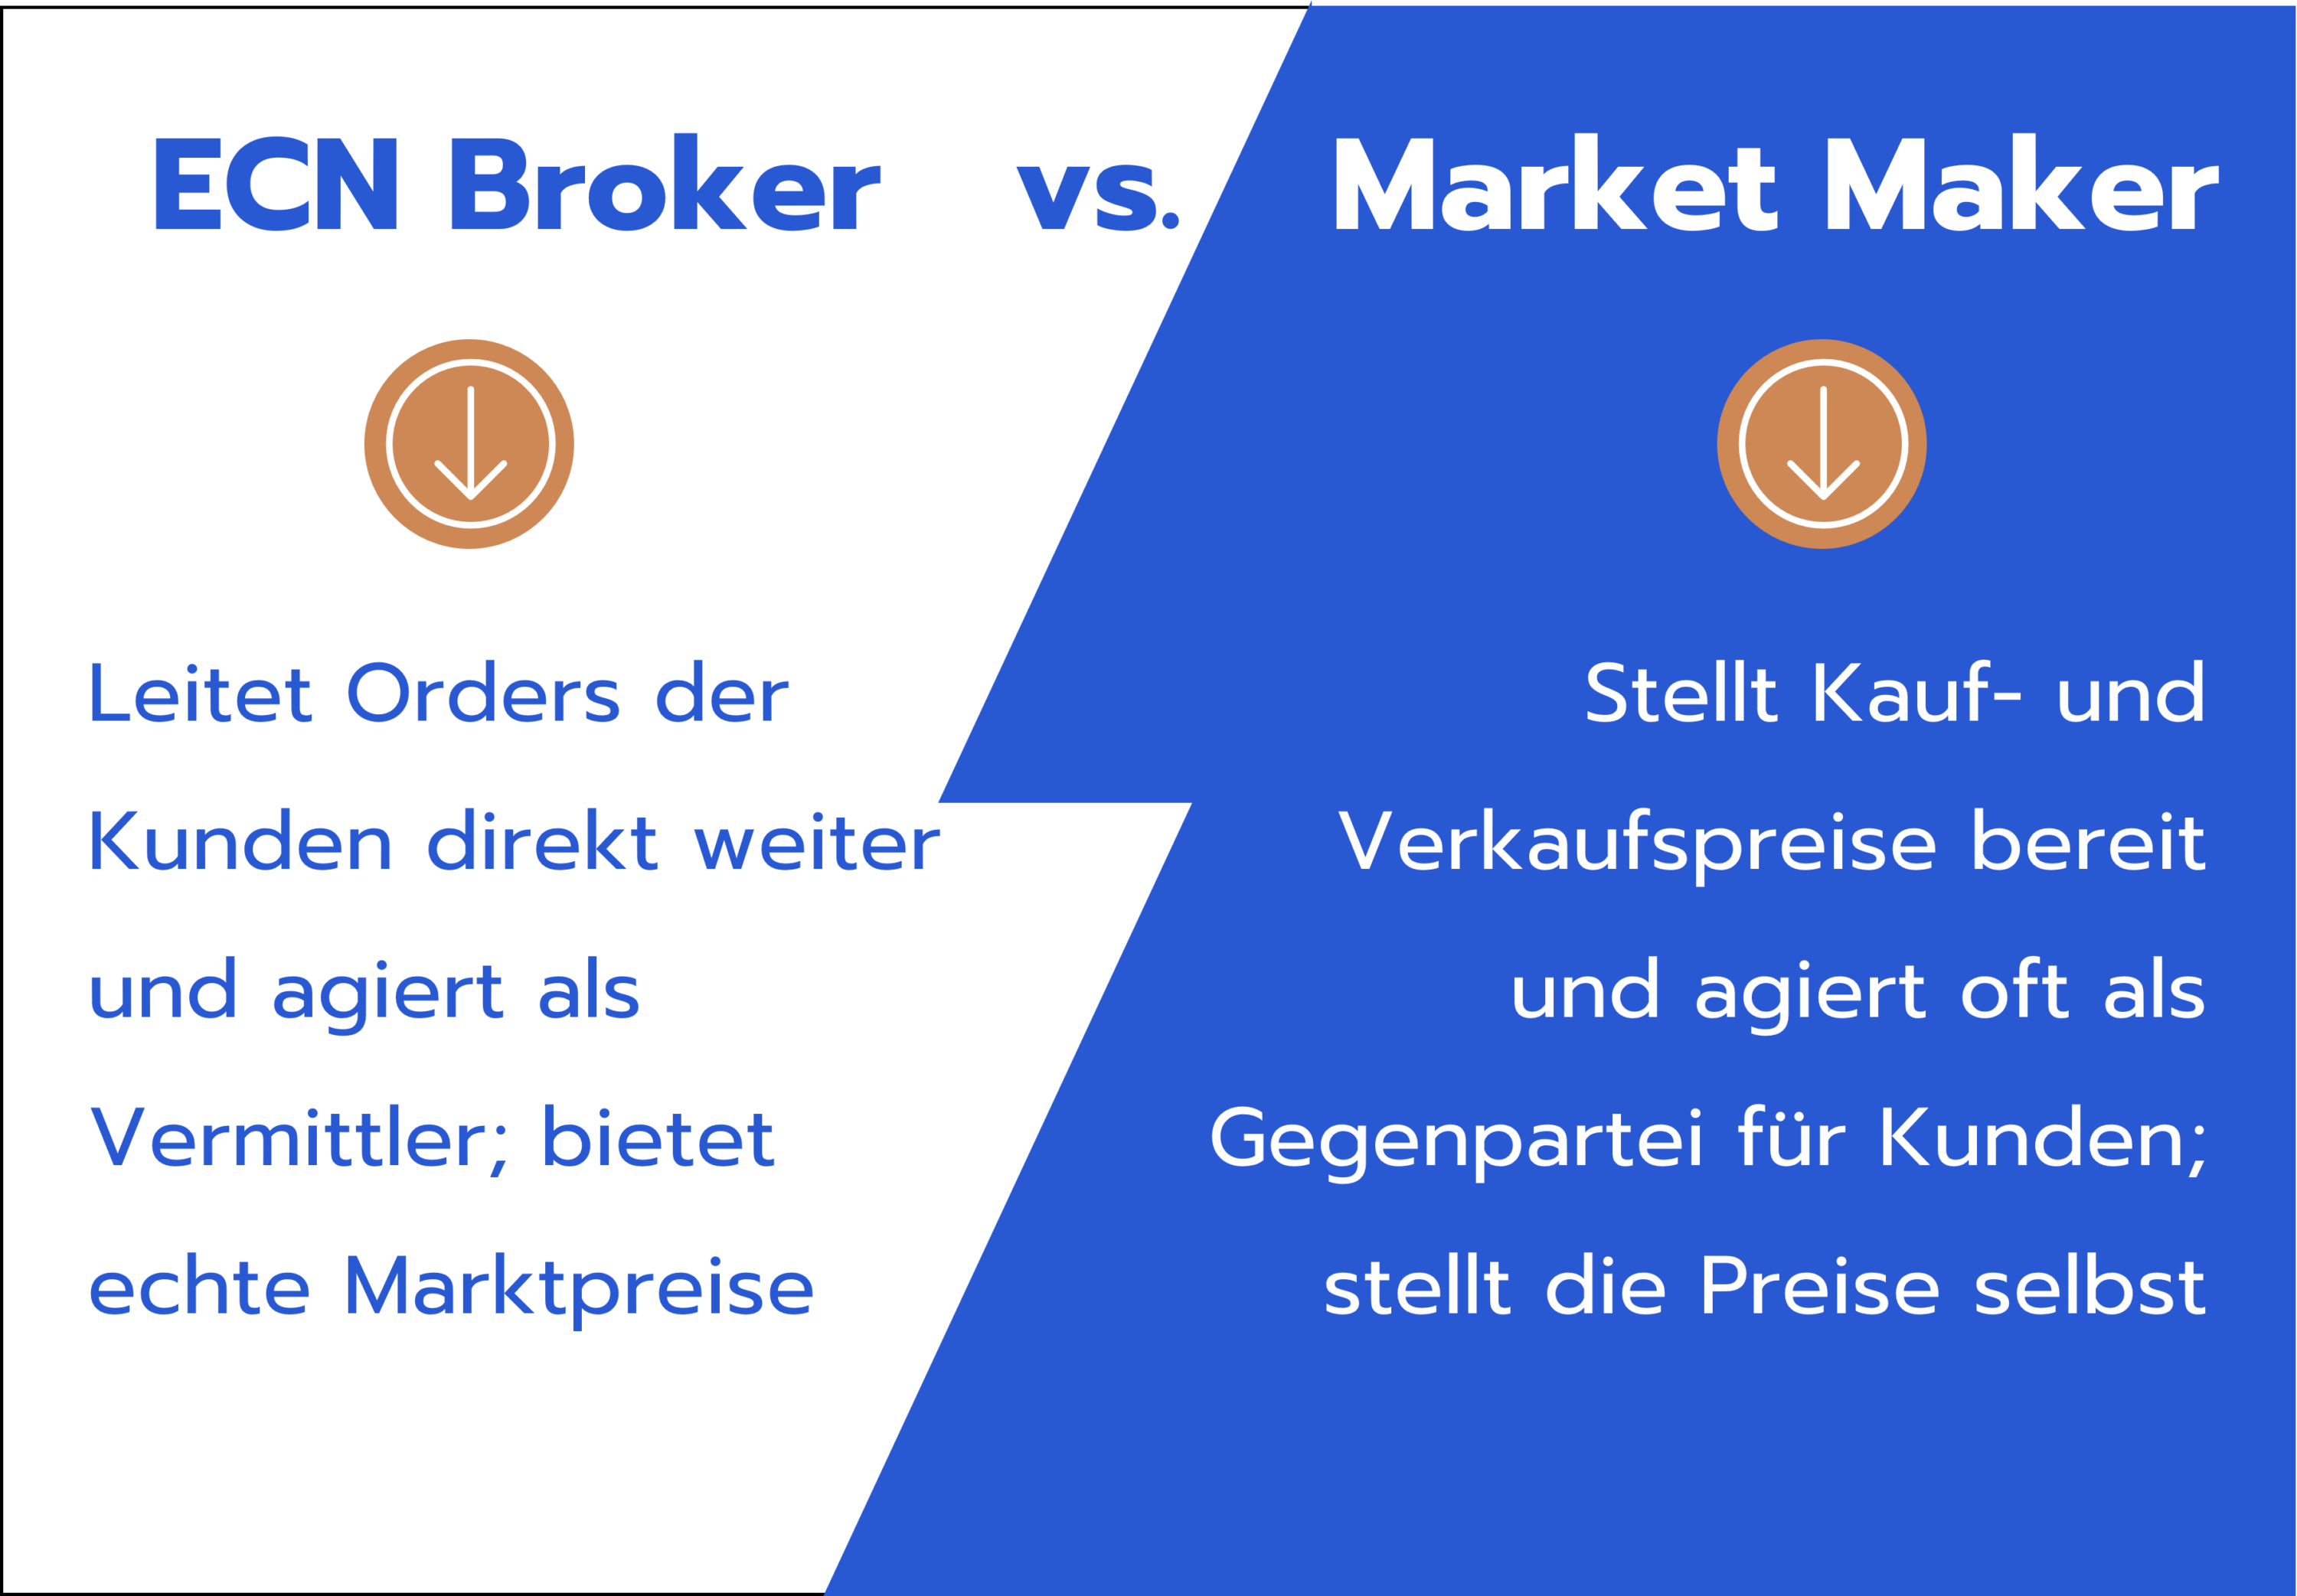 ECN Broker vs. Market Maker